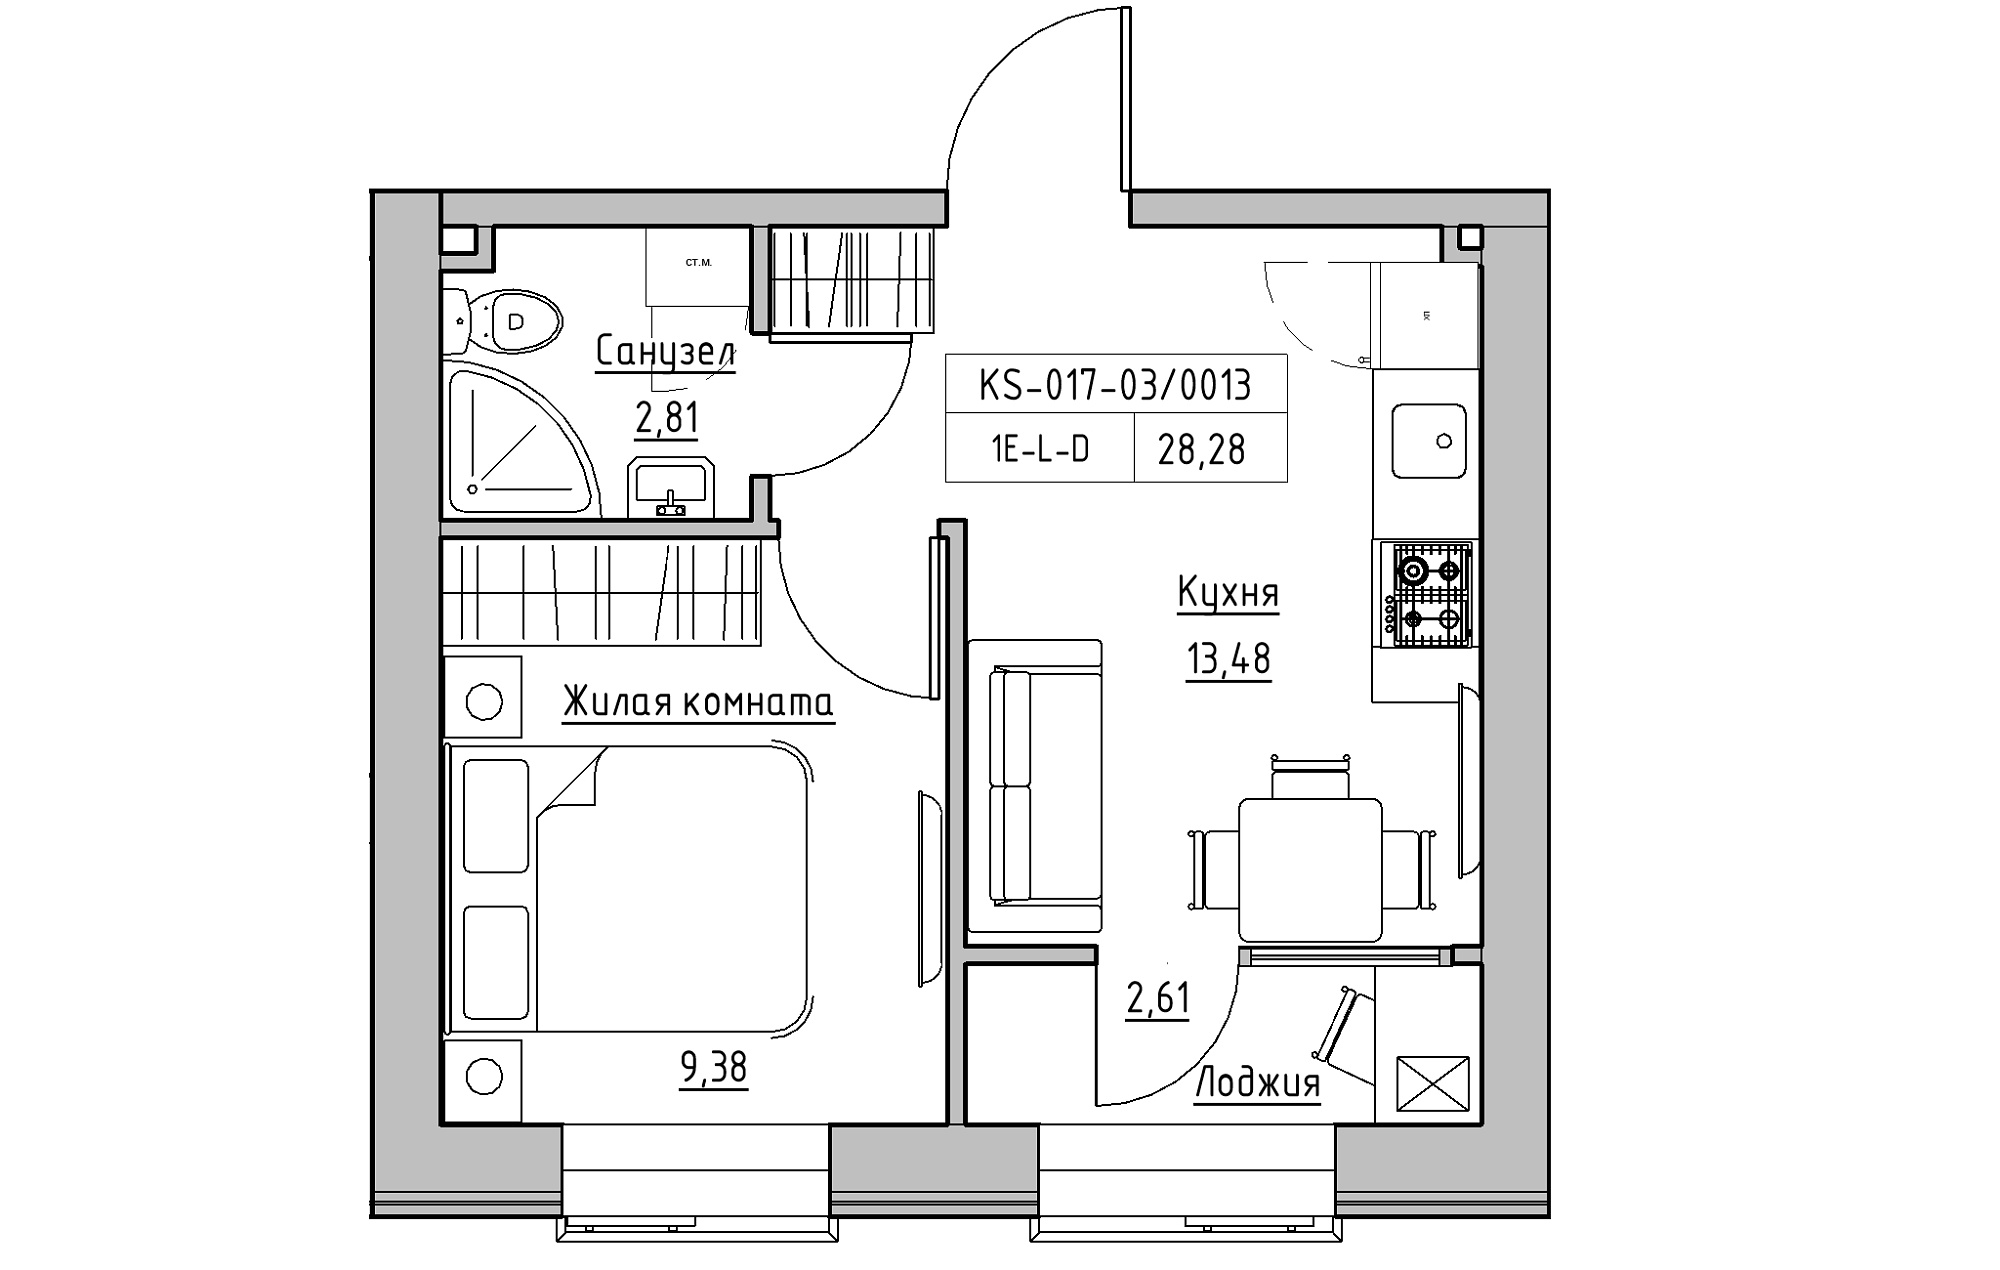 Планировка 1-к квартира площей 28.28м2, KS-017-03/0013.